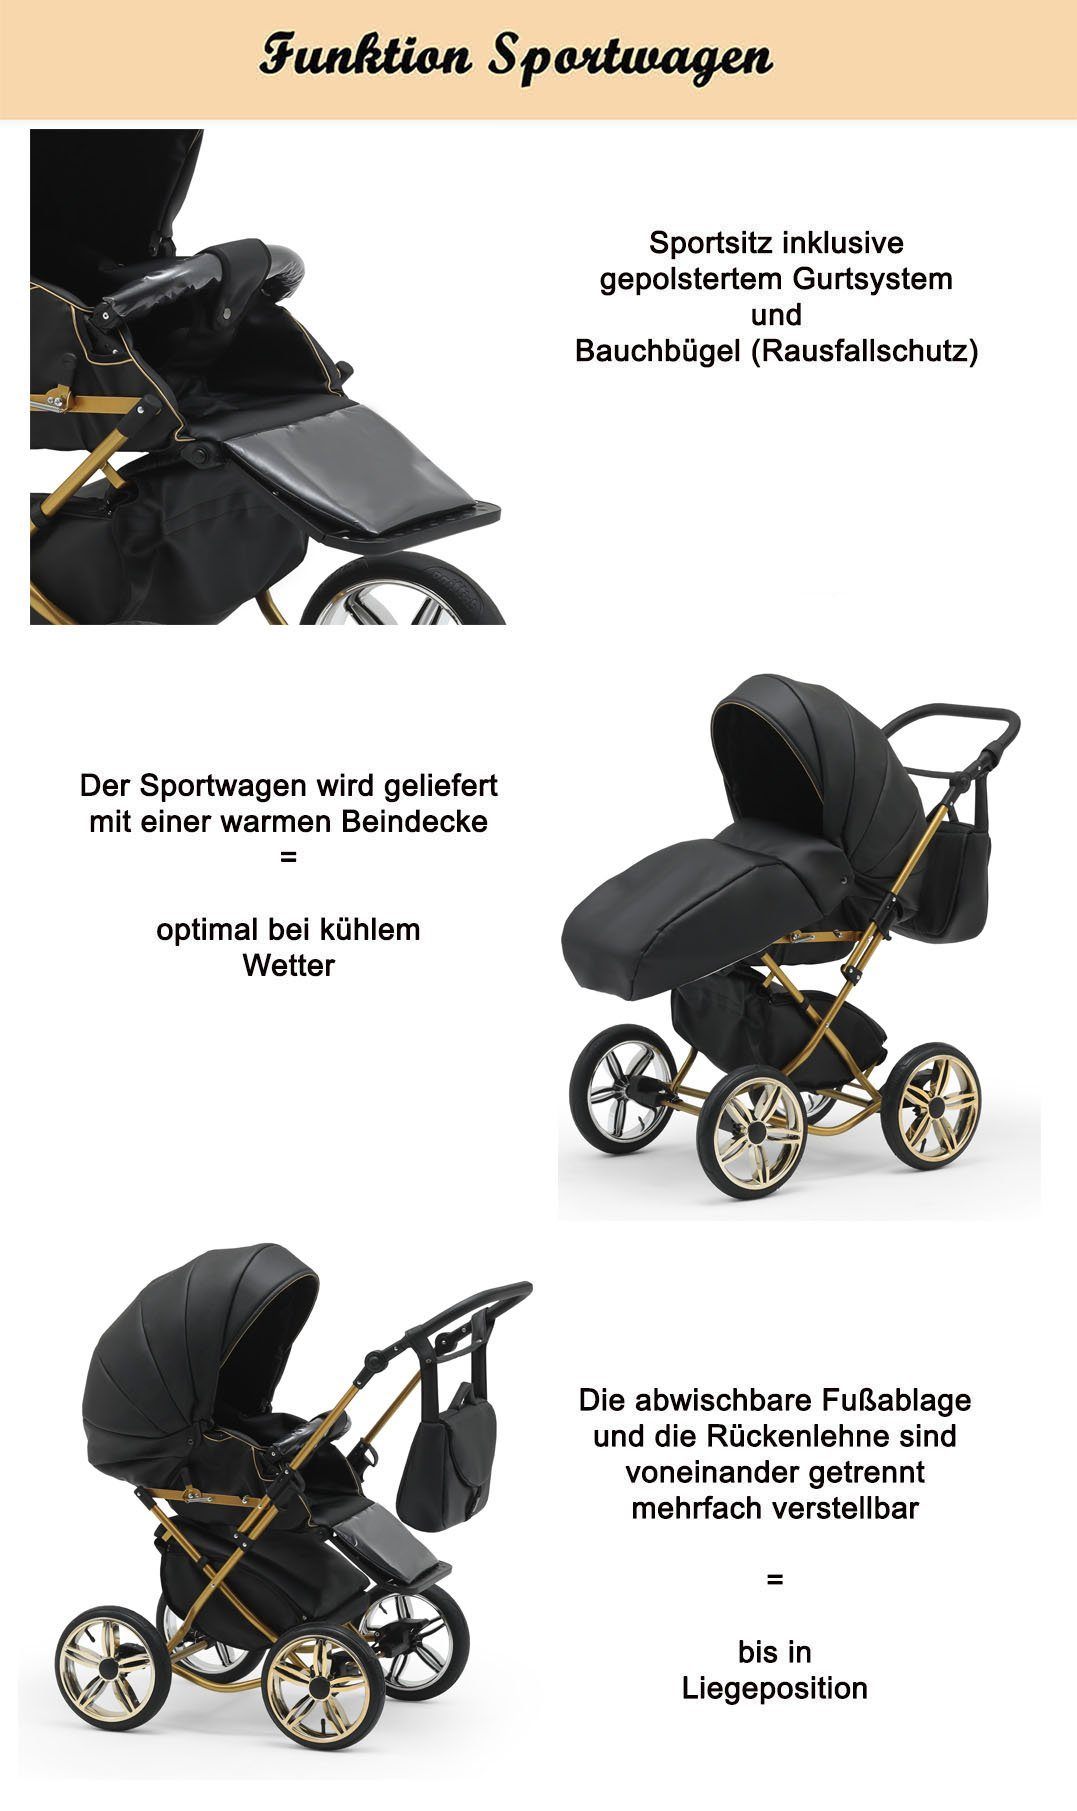 2 Jahre in 4 30 in 1 11 Braun-Weiß Designs Kombi-Kinderwagen Sorento Geburt - bis babies-on-wheels Teile - von